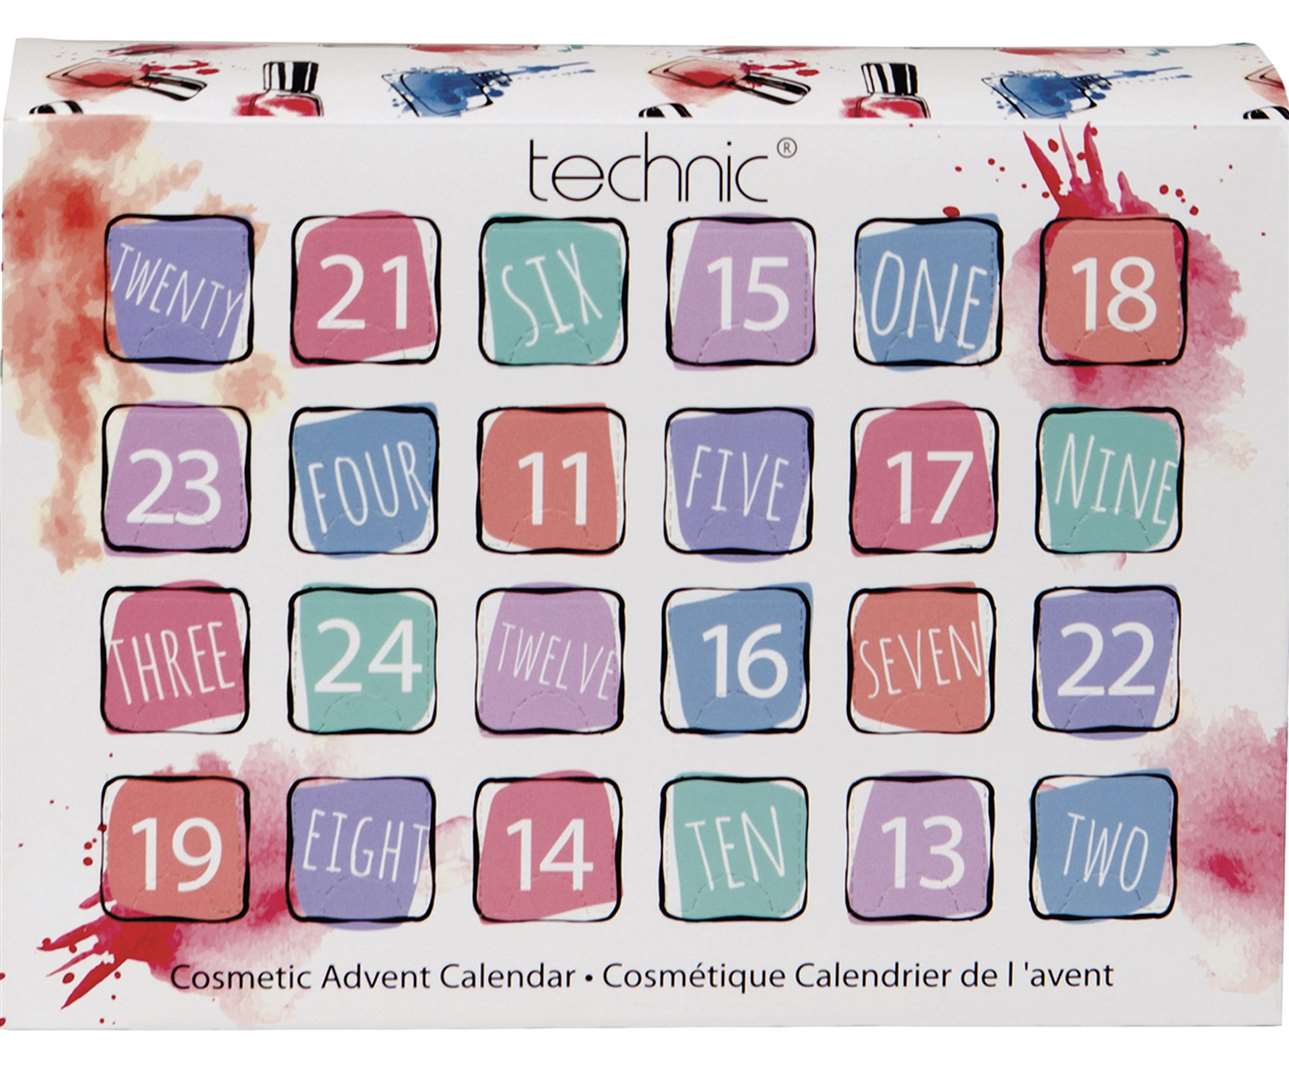 JD Williams' Technic Mini Nails calendar